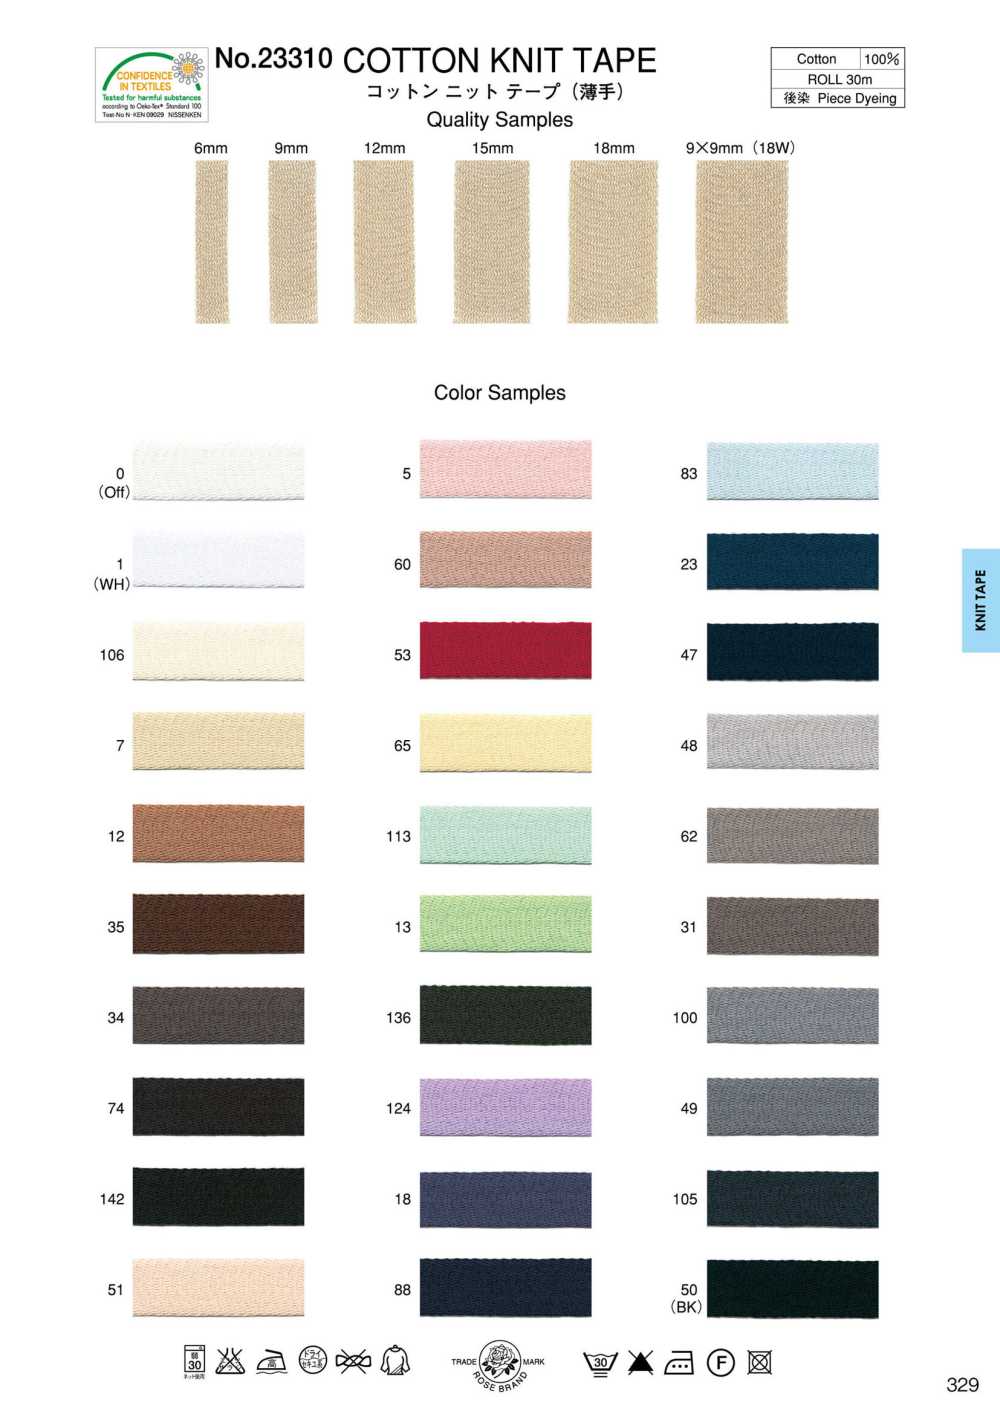 23310-SAMPLE 23310 Catalogue Sản Phẩm Băng Vải Dệt Kim Cotton (Mỏng) ROSE BRAND (Marushin)